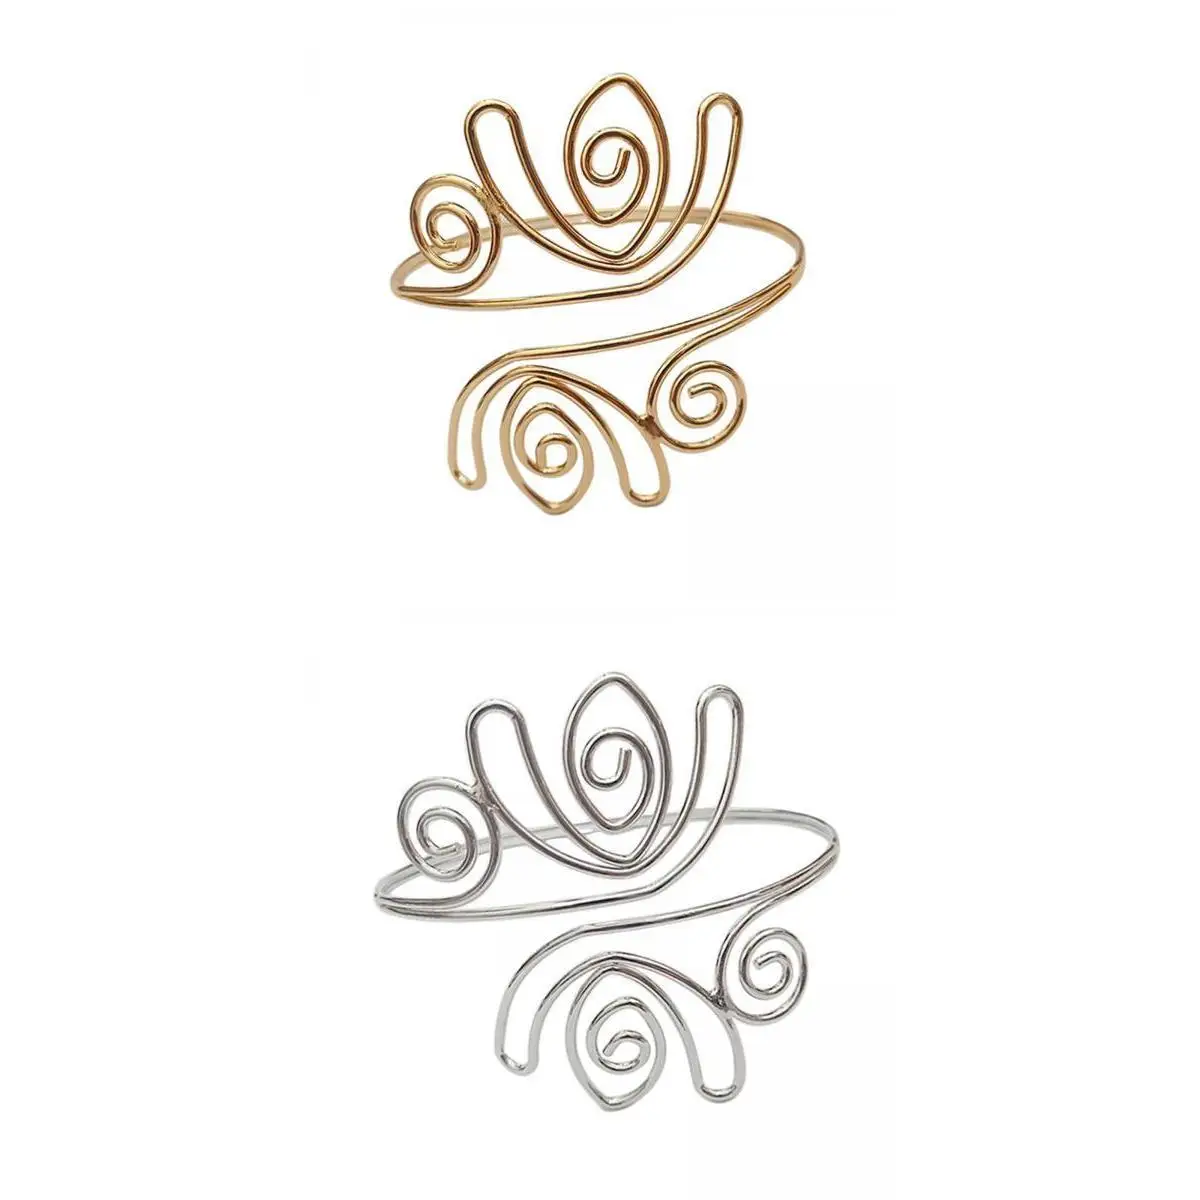 2 Pieces Swirl Upper Arm Cuff Bangle Jewelry Bracelet Armband Beach Jewelry